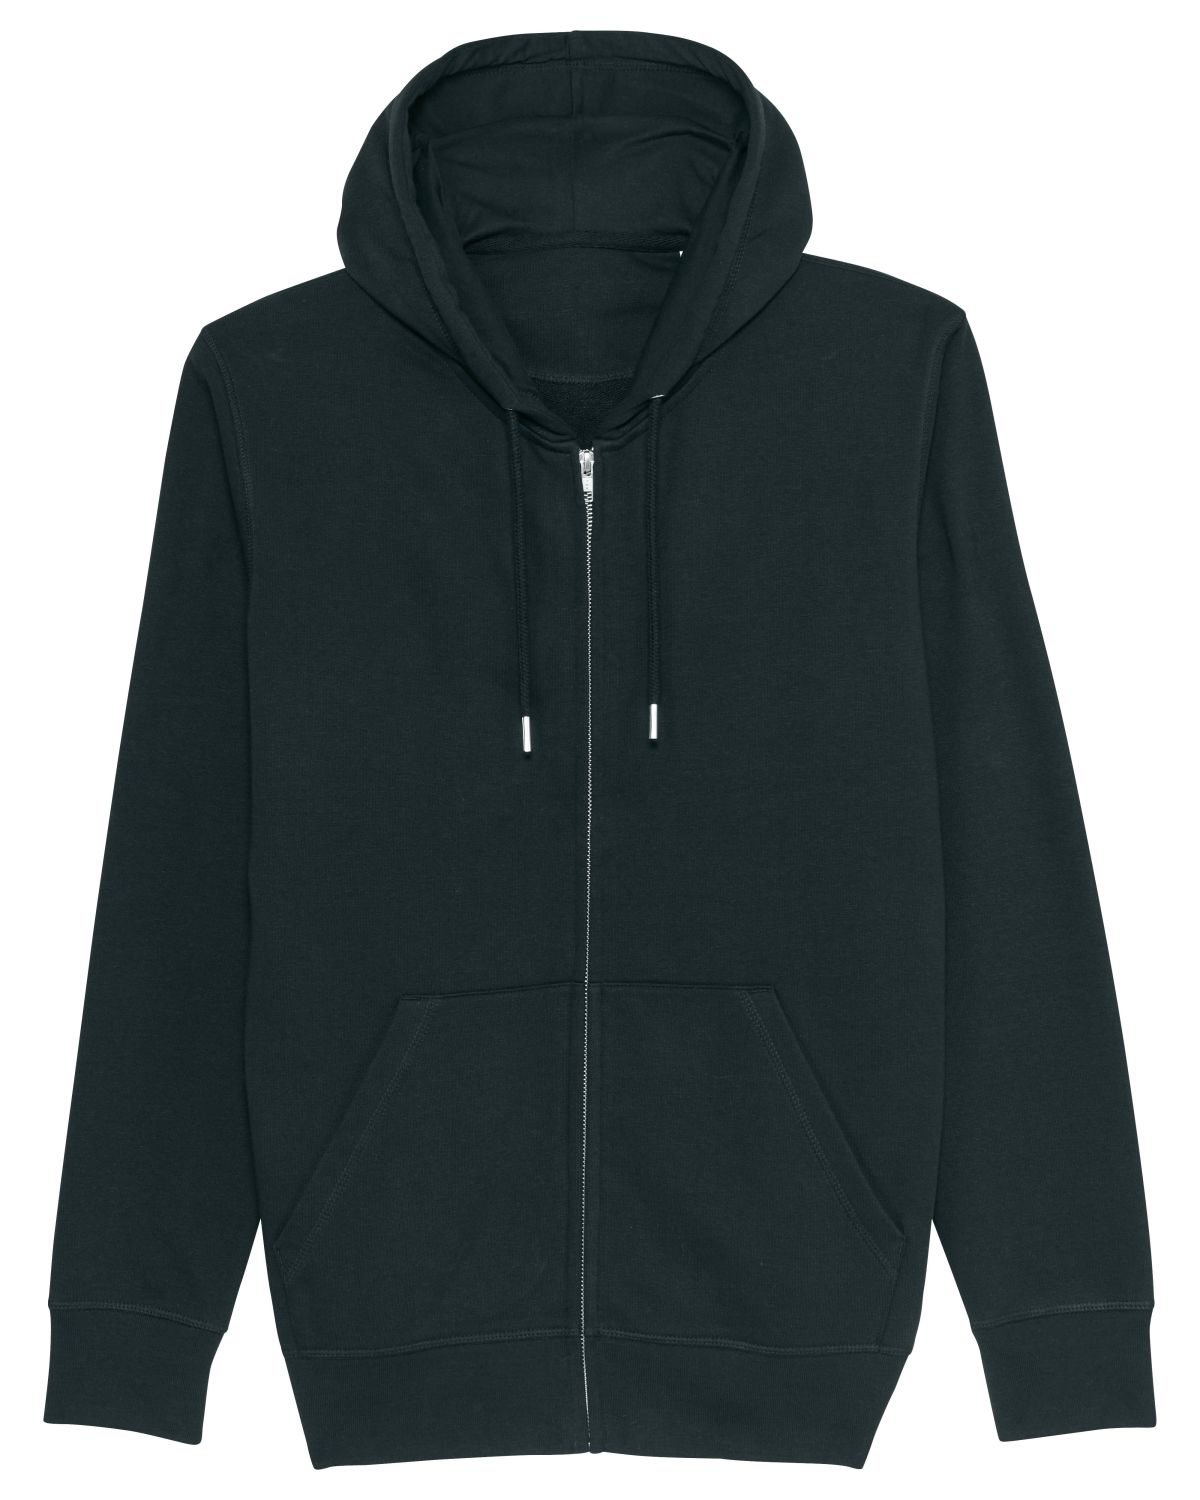 The Essential Unisex Zip-Thru Hoodie Sweatshirt